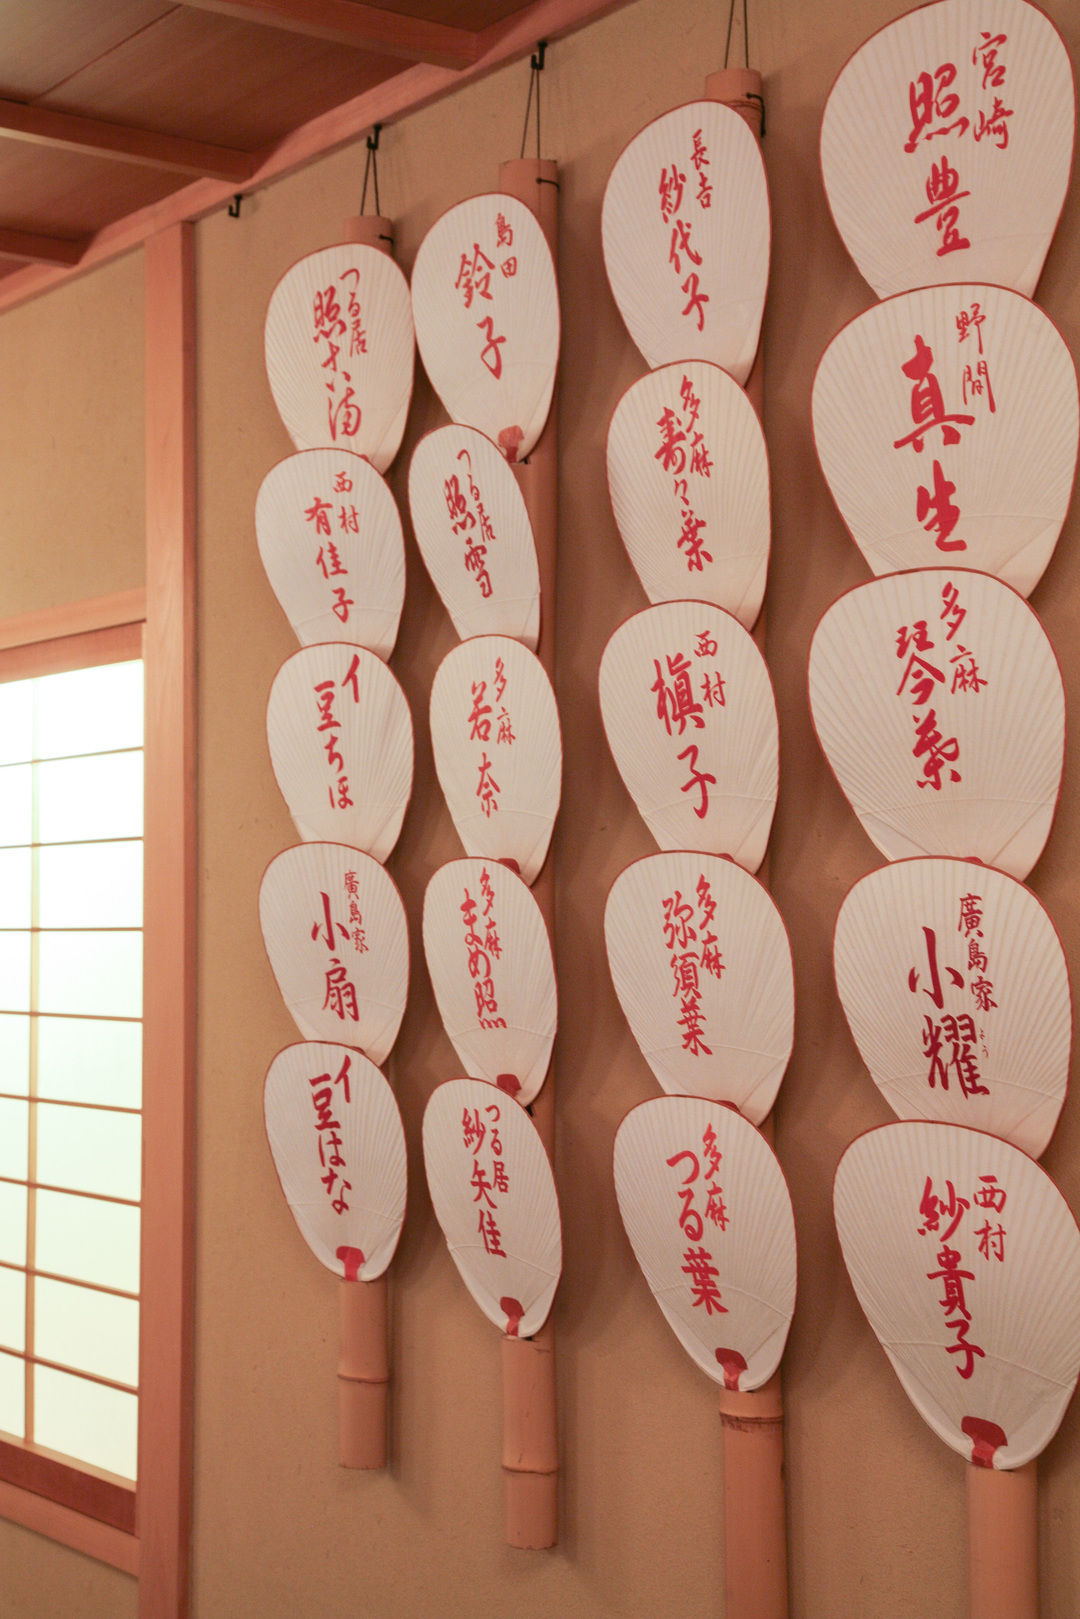 京都・花街に夏の訪れを告げる「団扇の贈り物」 | ちょっと粋なおやじ 京都祇園に学ぶ | ダイヤモンド・オンライン